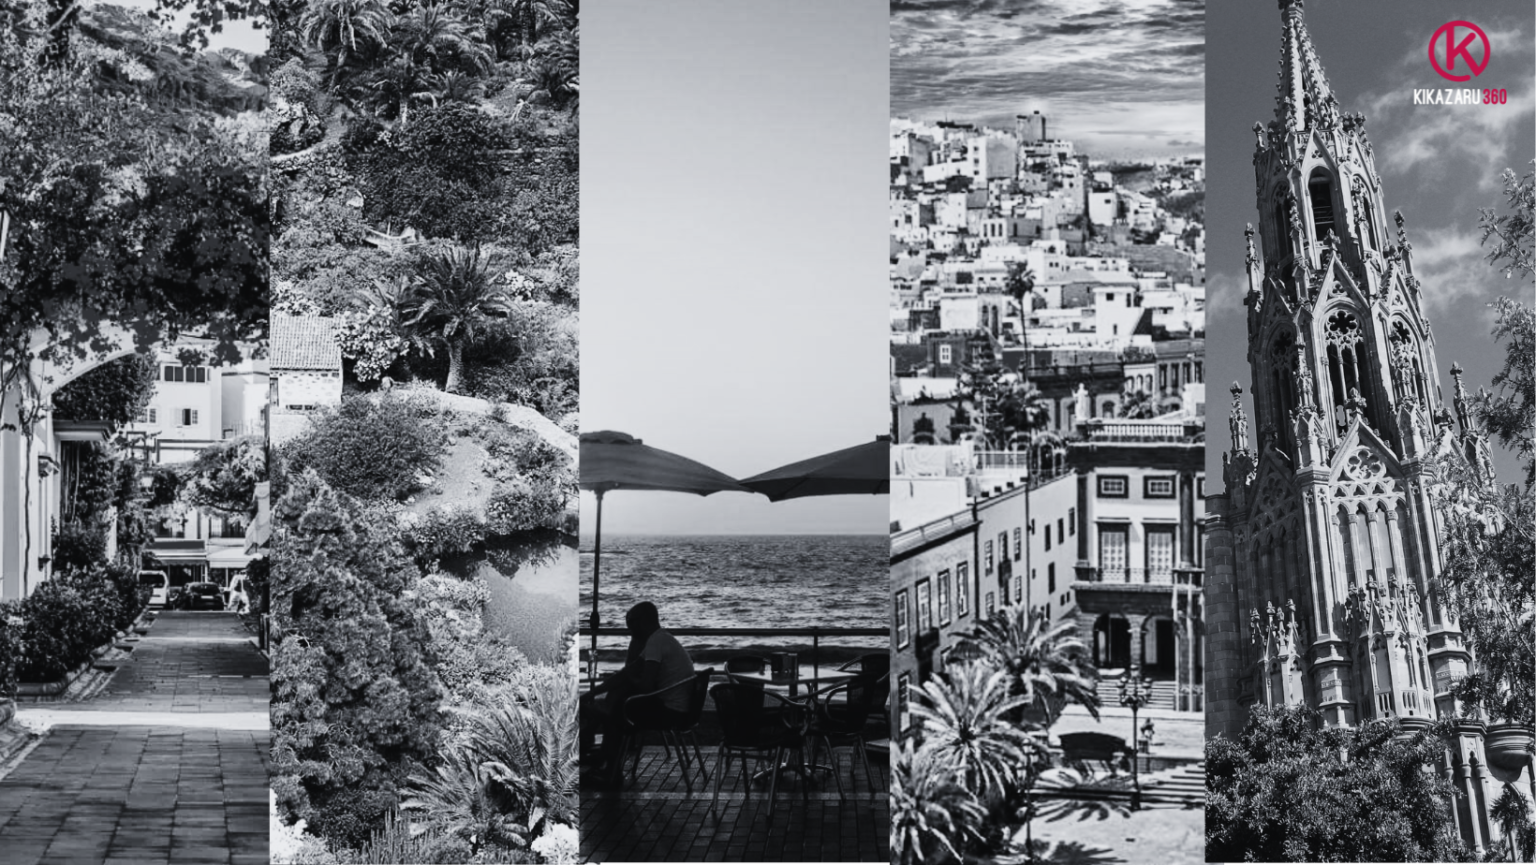 6 localizaciones en Gran Canaria para rodar tu proyecto audiovisual por las que las productoras eligen la isla como plató de rodaje.